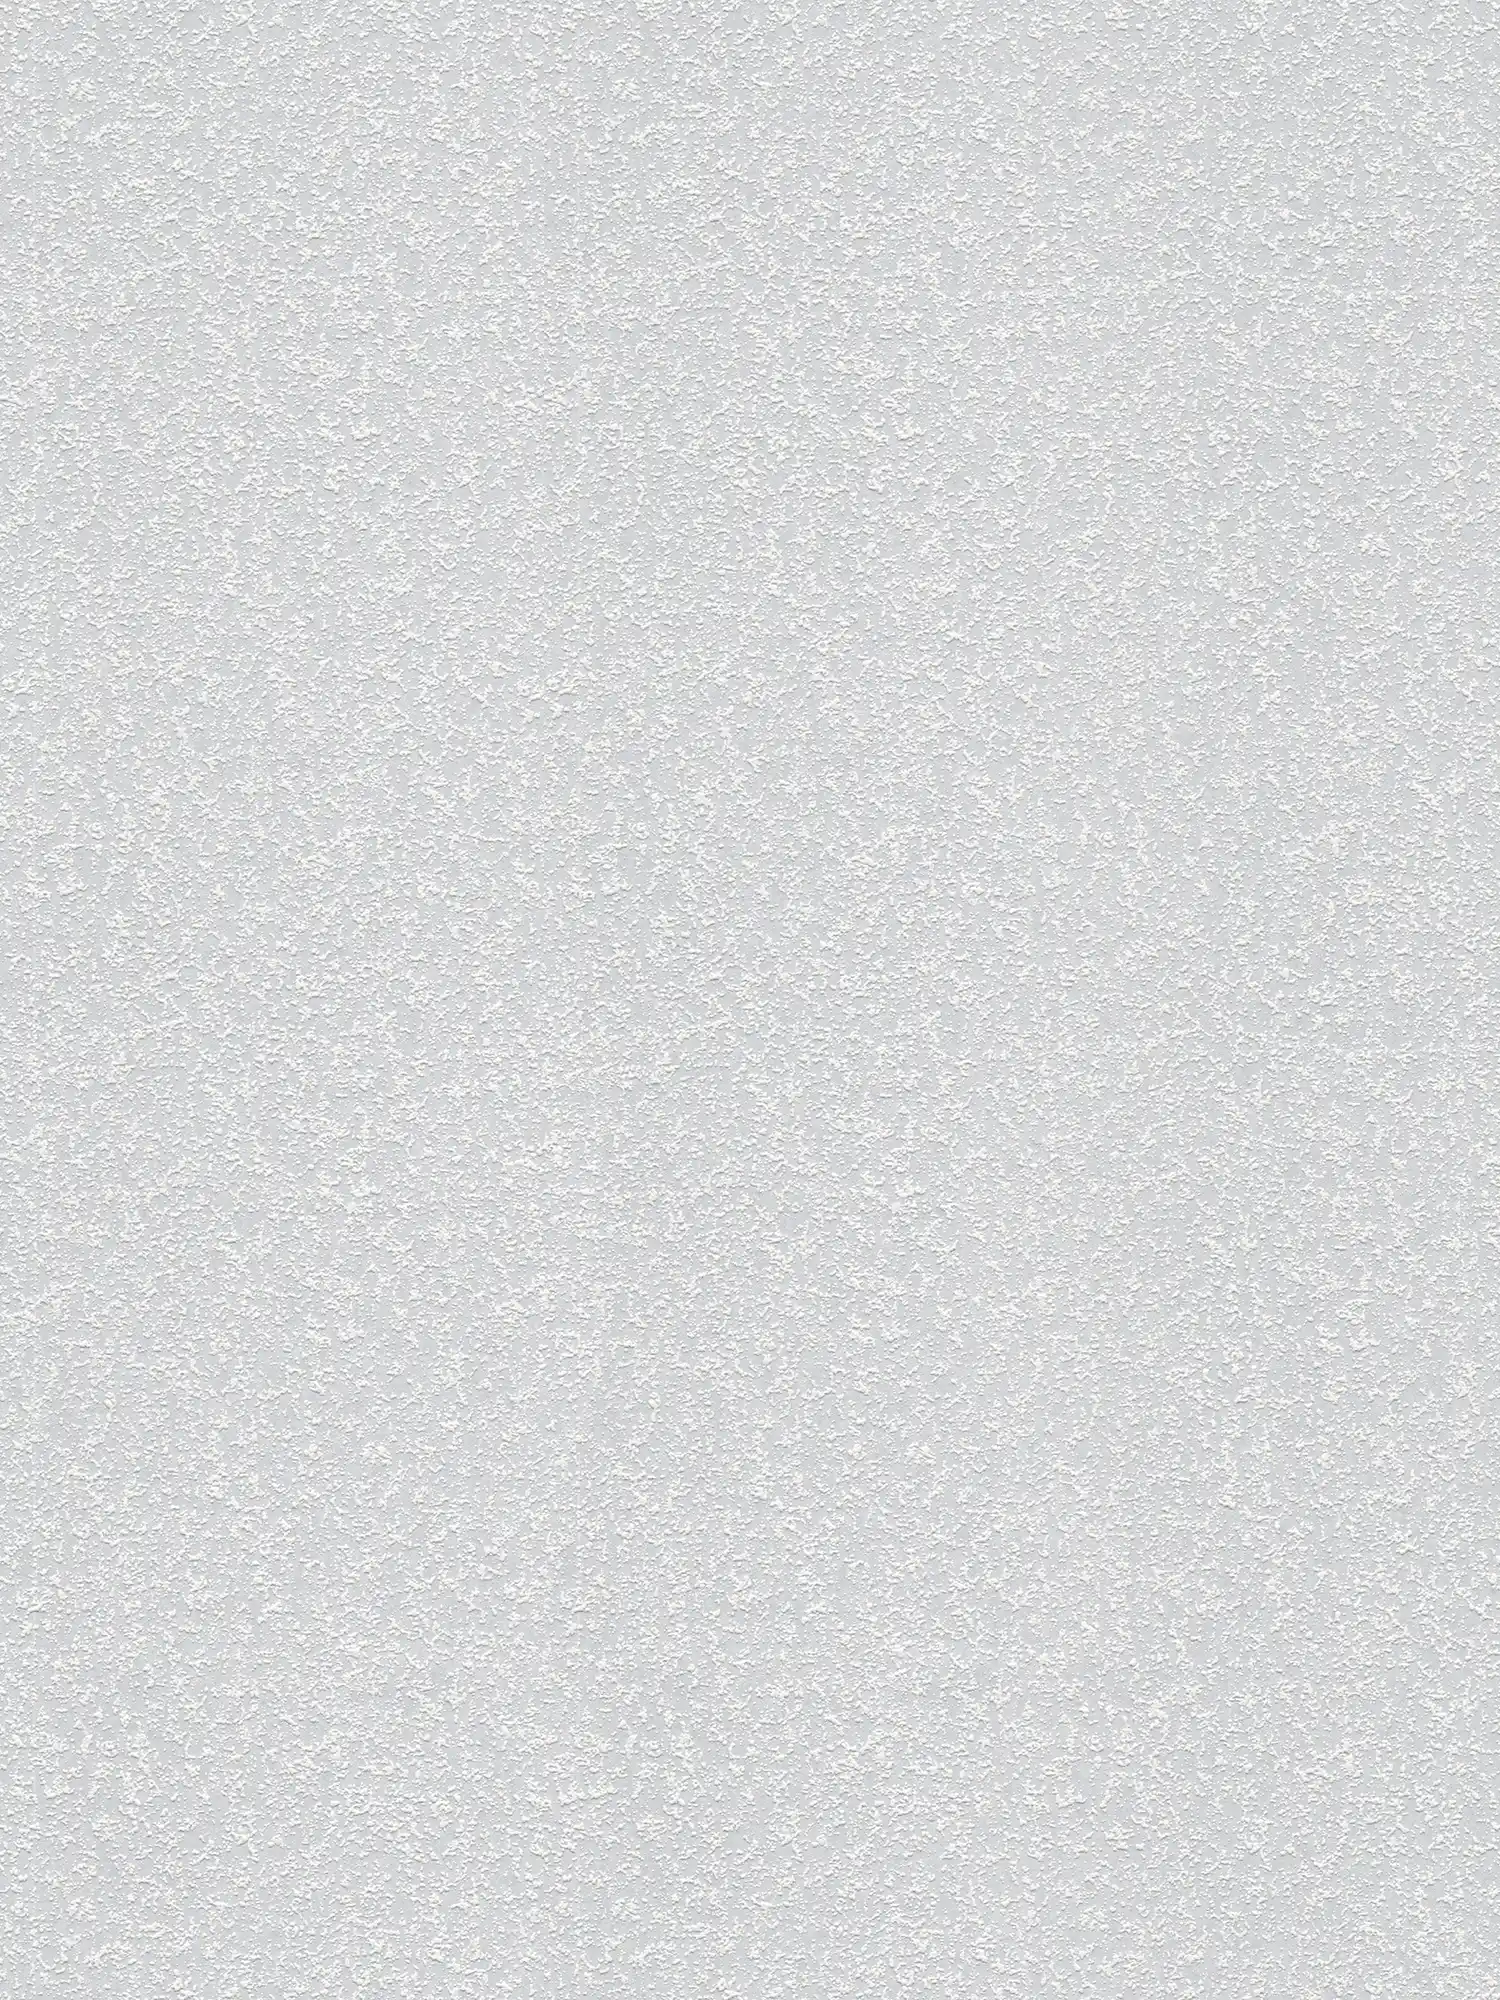 Structuurbehang met korrelige zandstructuur - overschilderbaar, wit
